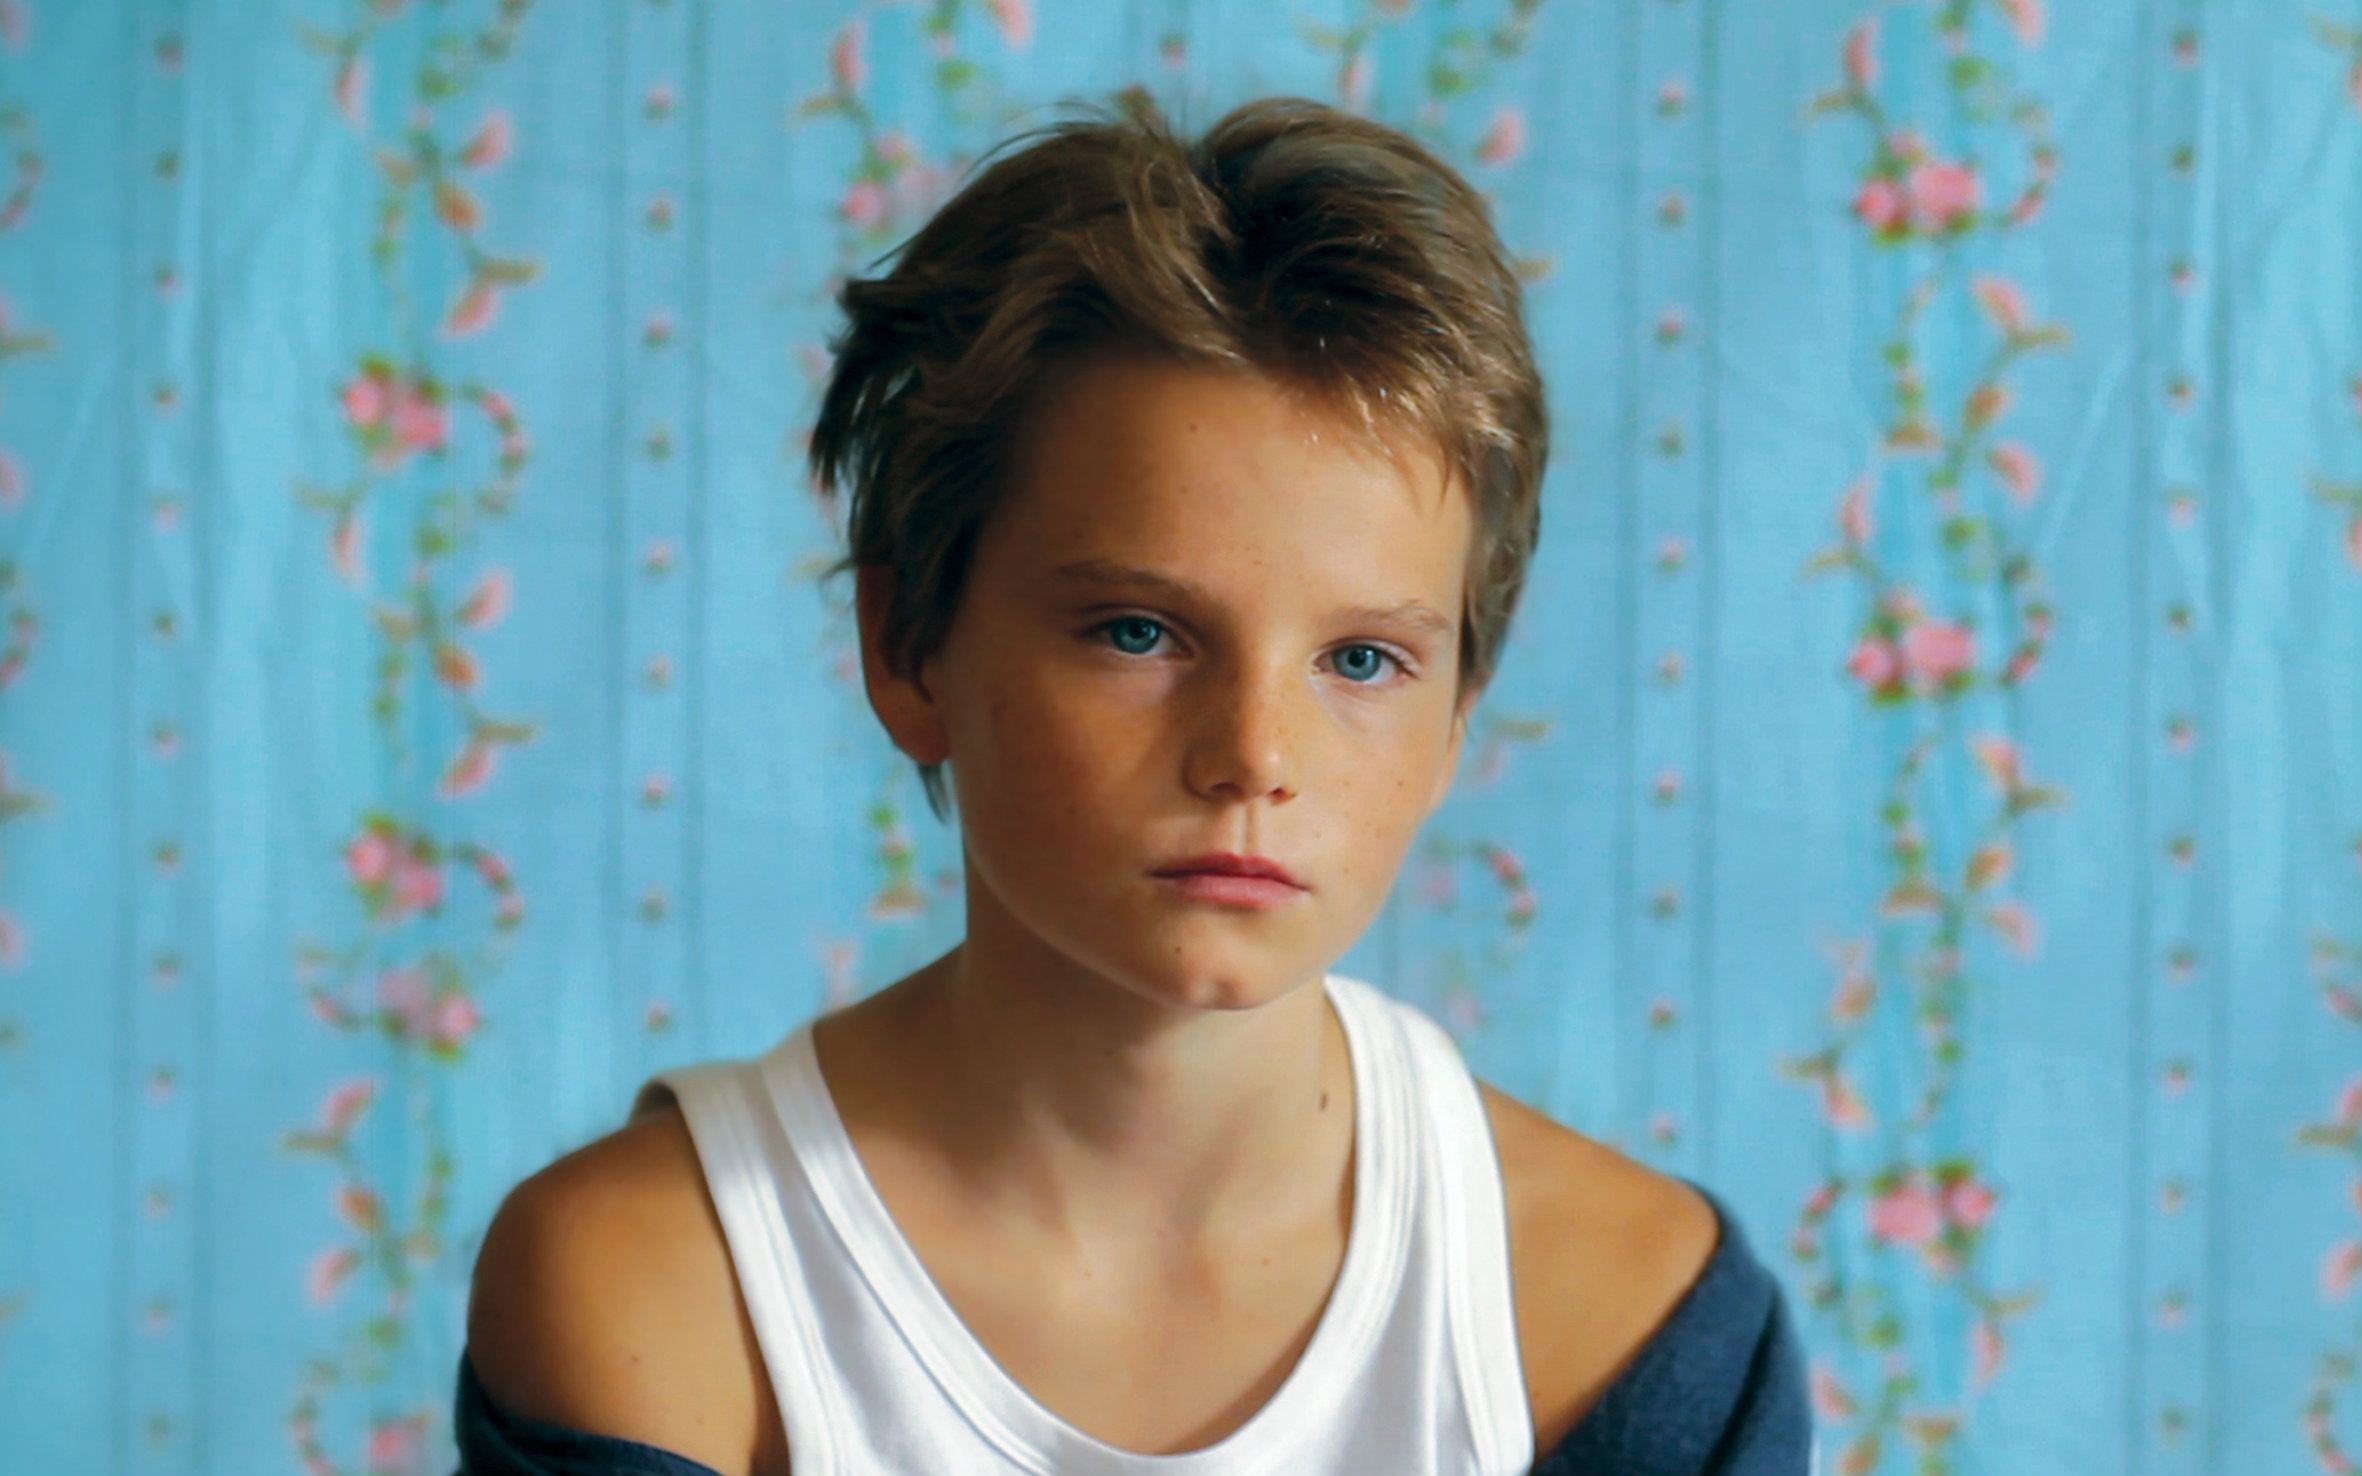 【720p】高分法国同性独立电影《假小子》 【tomboy】